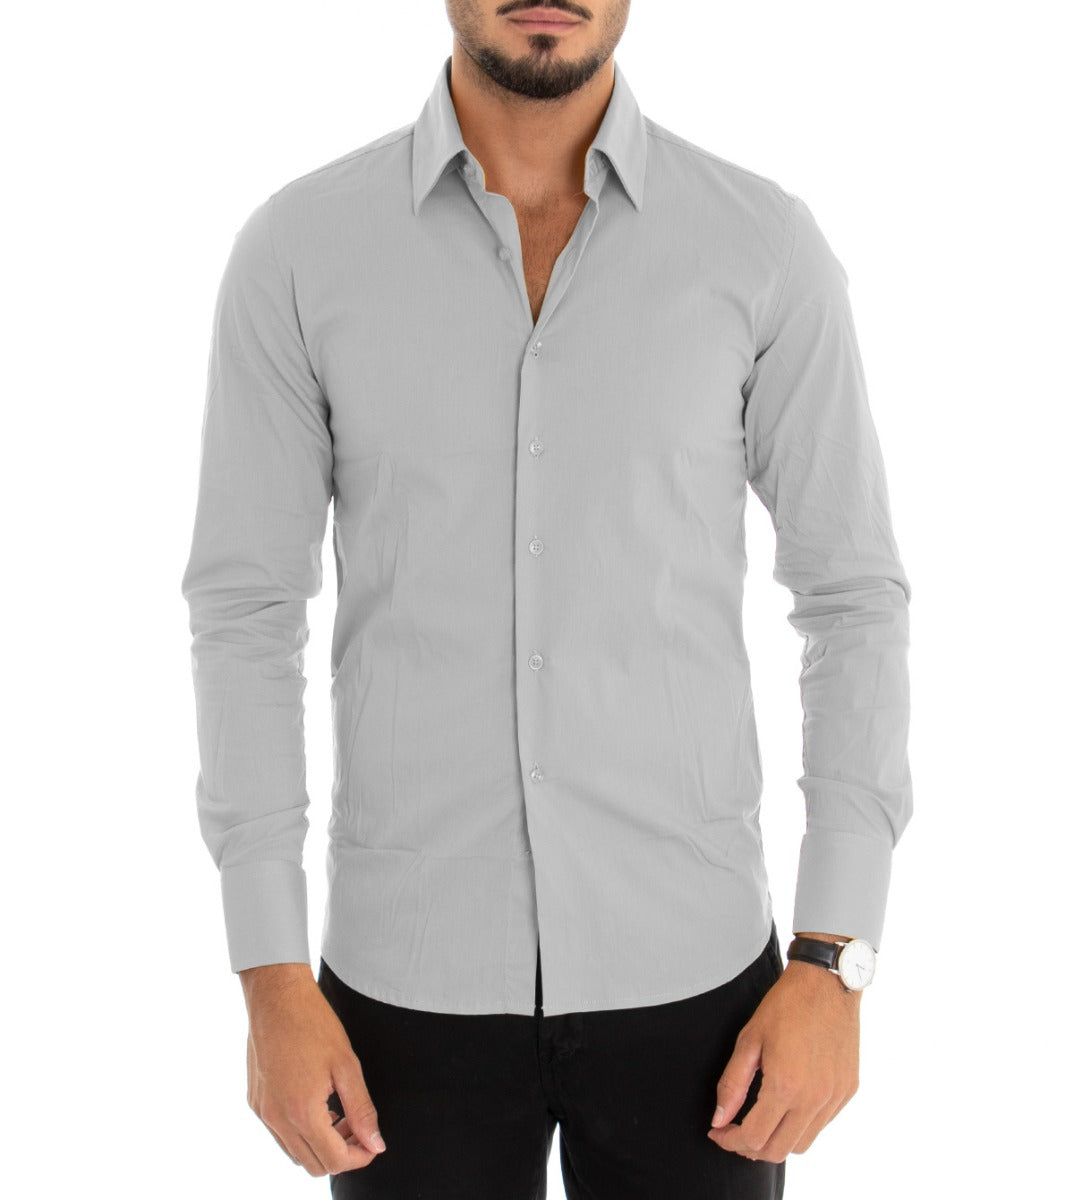 Camicia Uomo Con Colletto Manica Lunga Slim Fit Basic Casual Cotone Grigio GIOSAL-C1813A